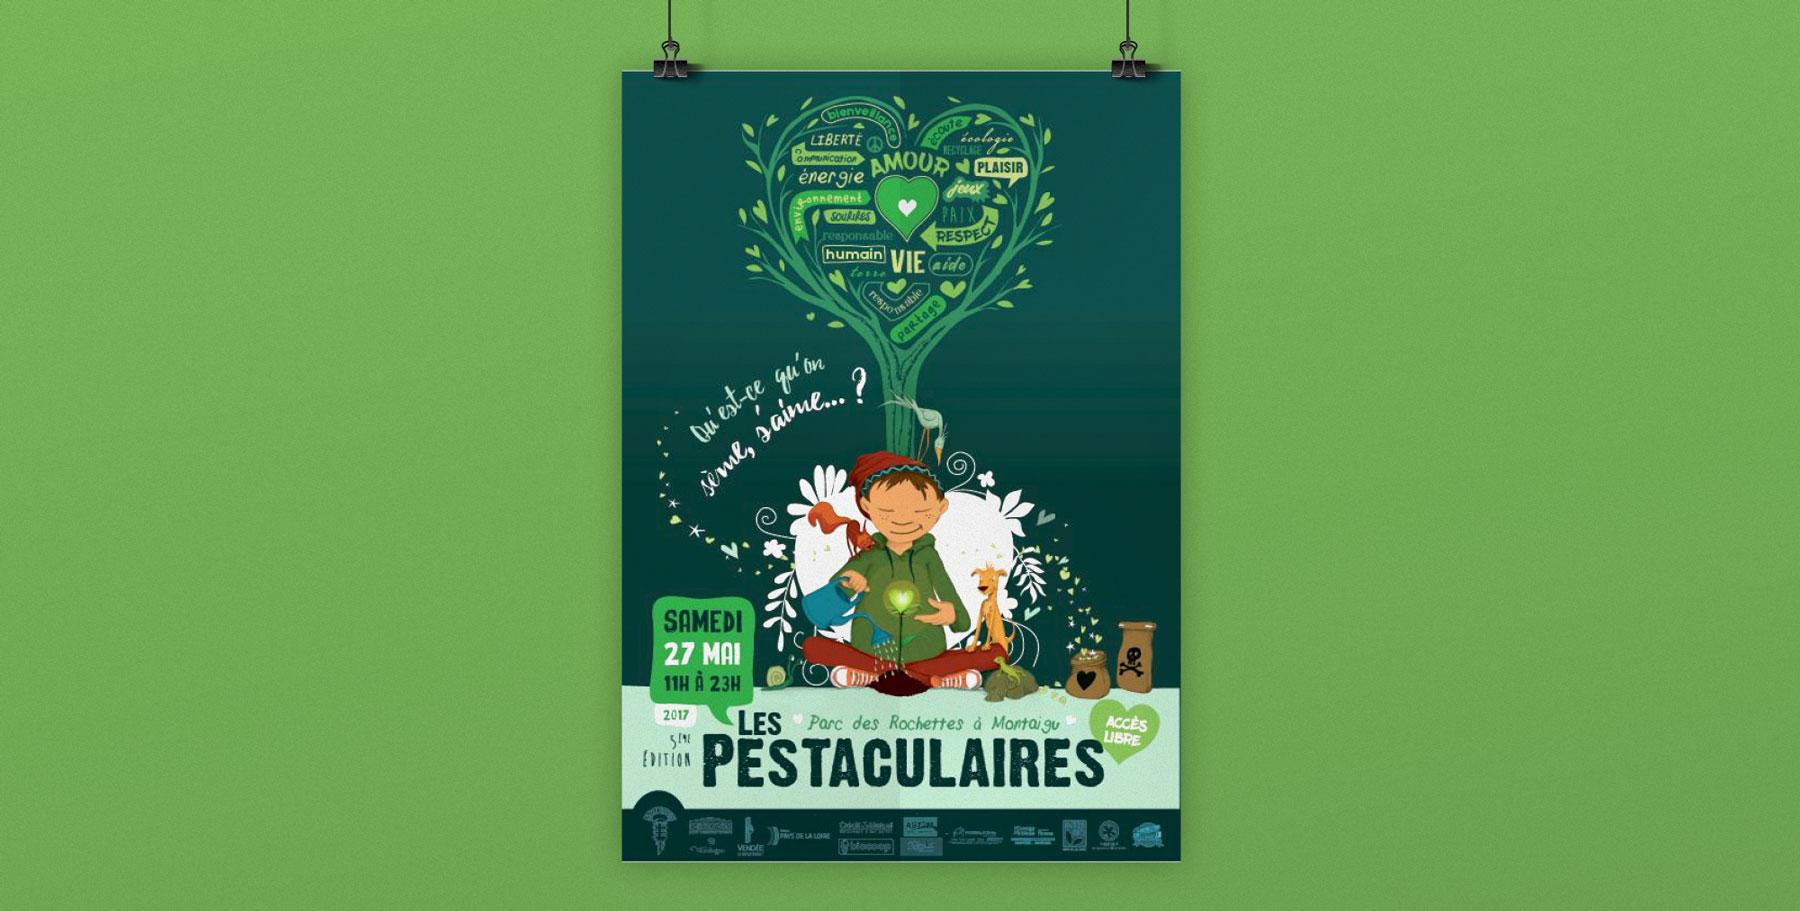 Affiche illustrée pour le festival familiale Les Pestaculaires pour l'association ArtSonic